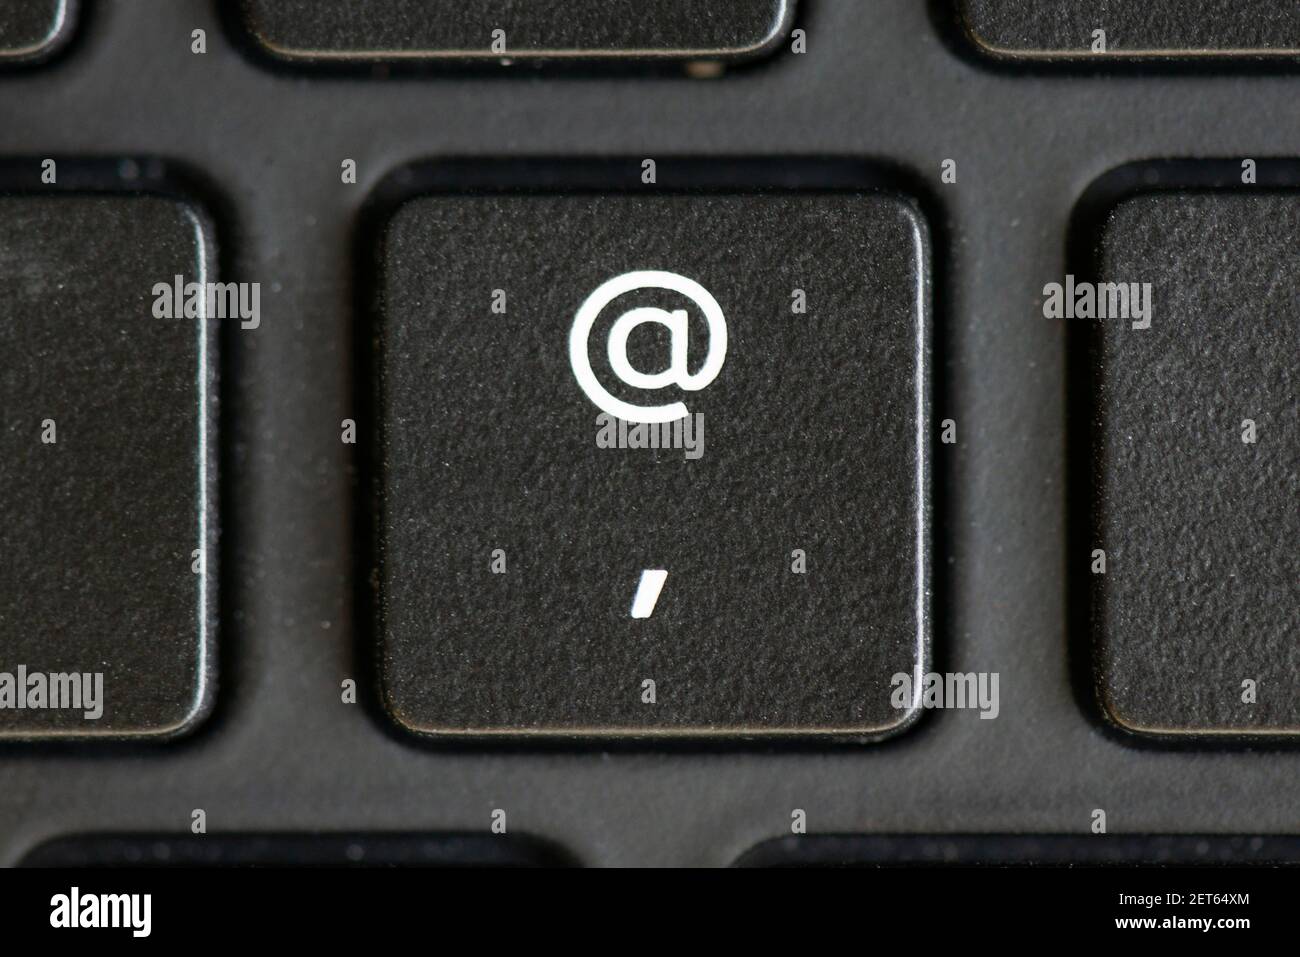 Apostroph und AT-Zeichen-Taste auf einer Laptop-Tastatur Stockfotografie -  Alamy